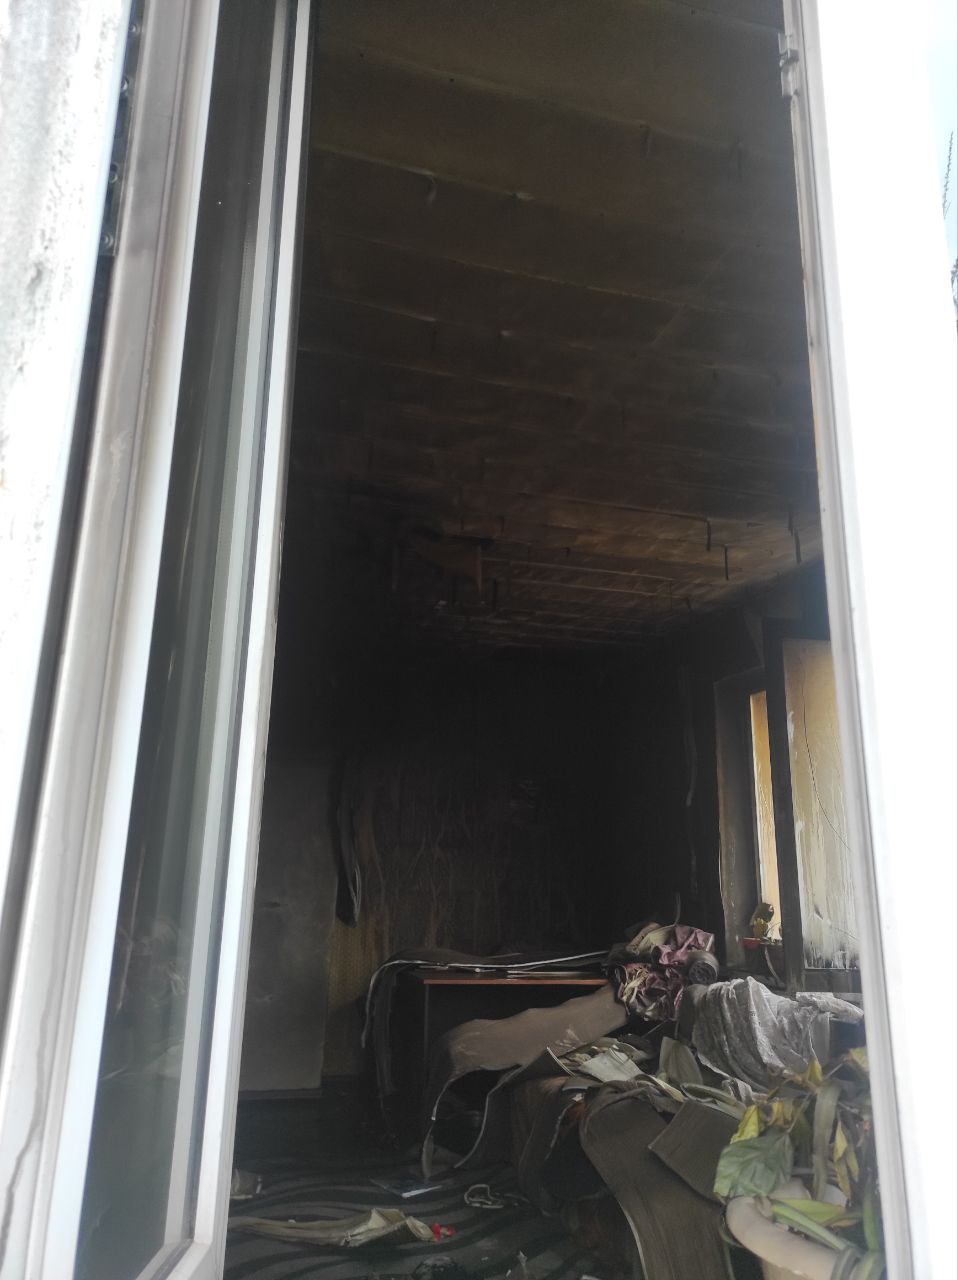 На минувшей неделе зарегистрировано два пожара. В Пинске горели жилые дома